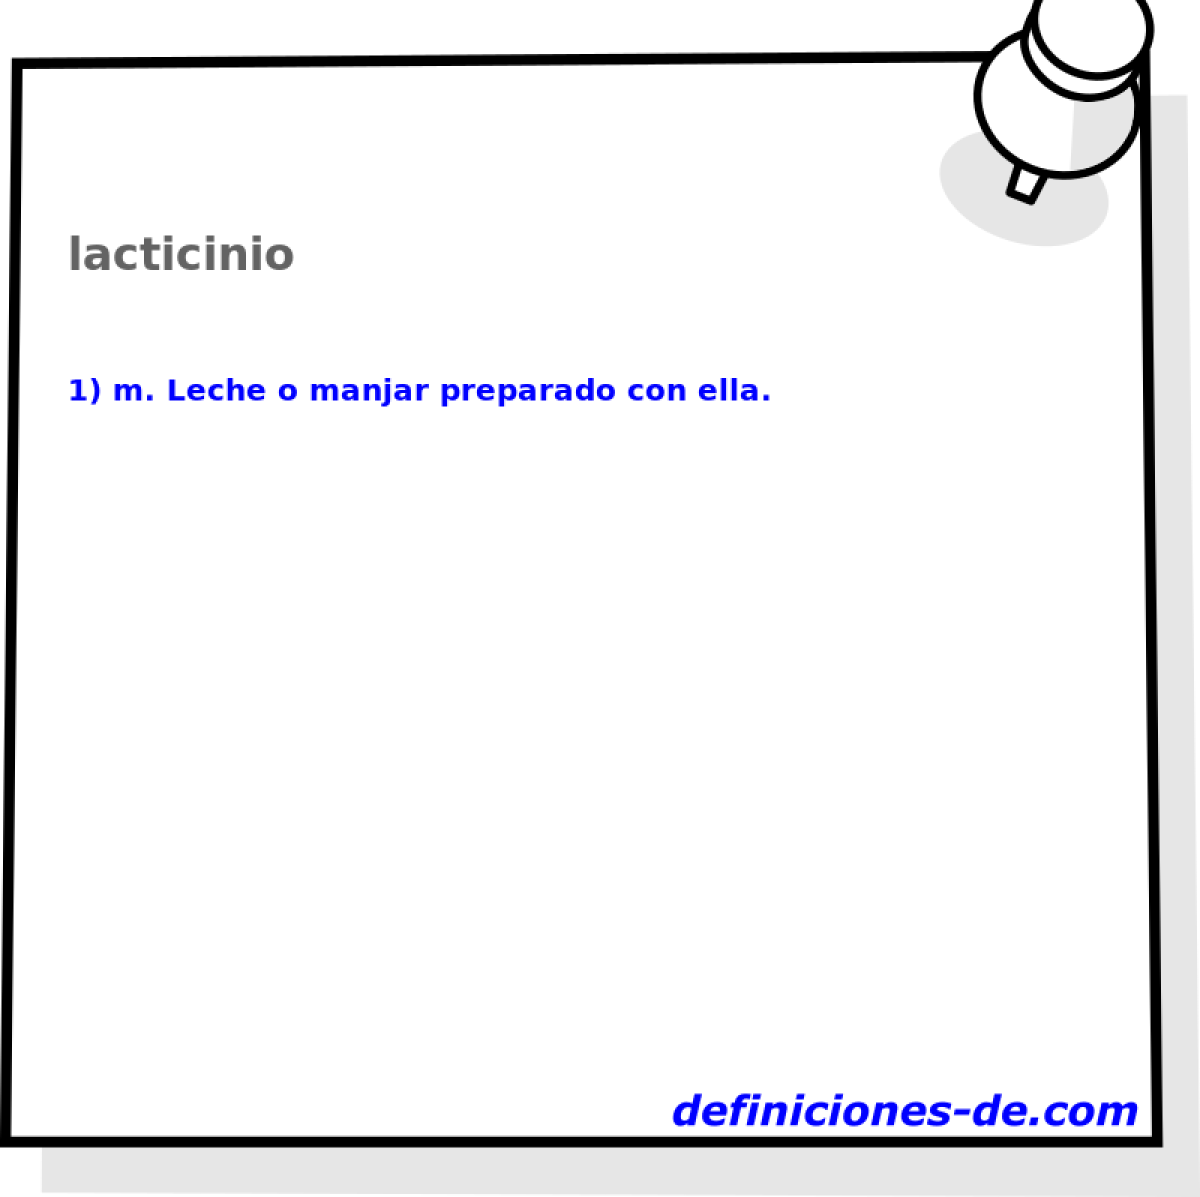 lacticinio 